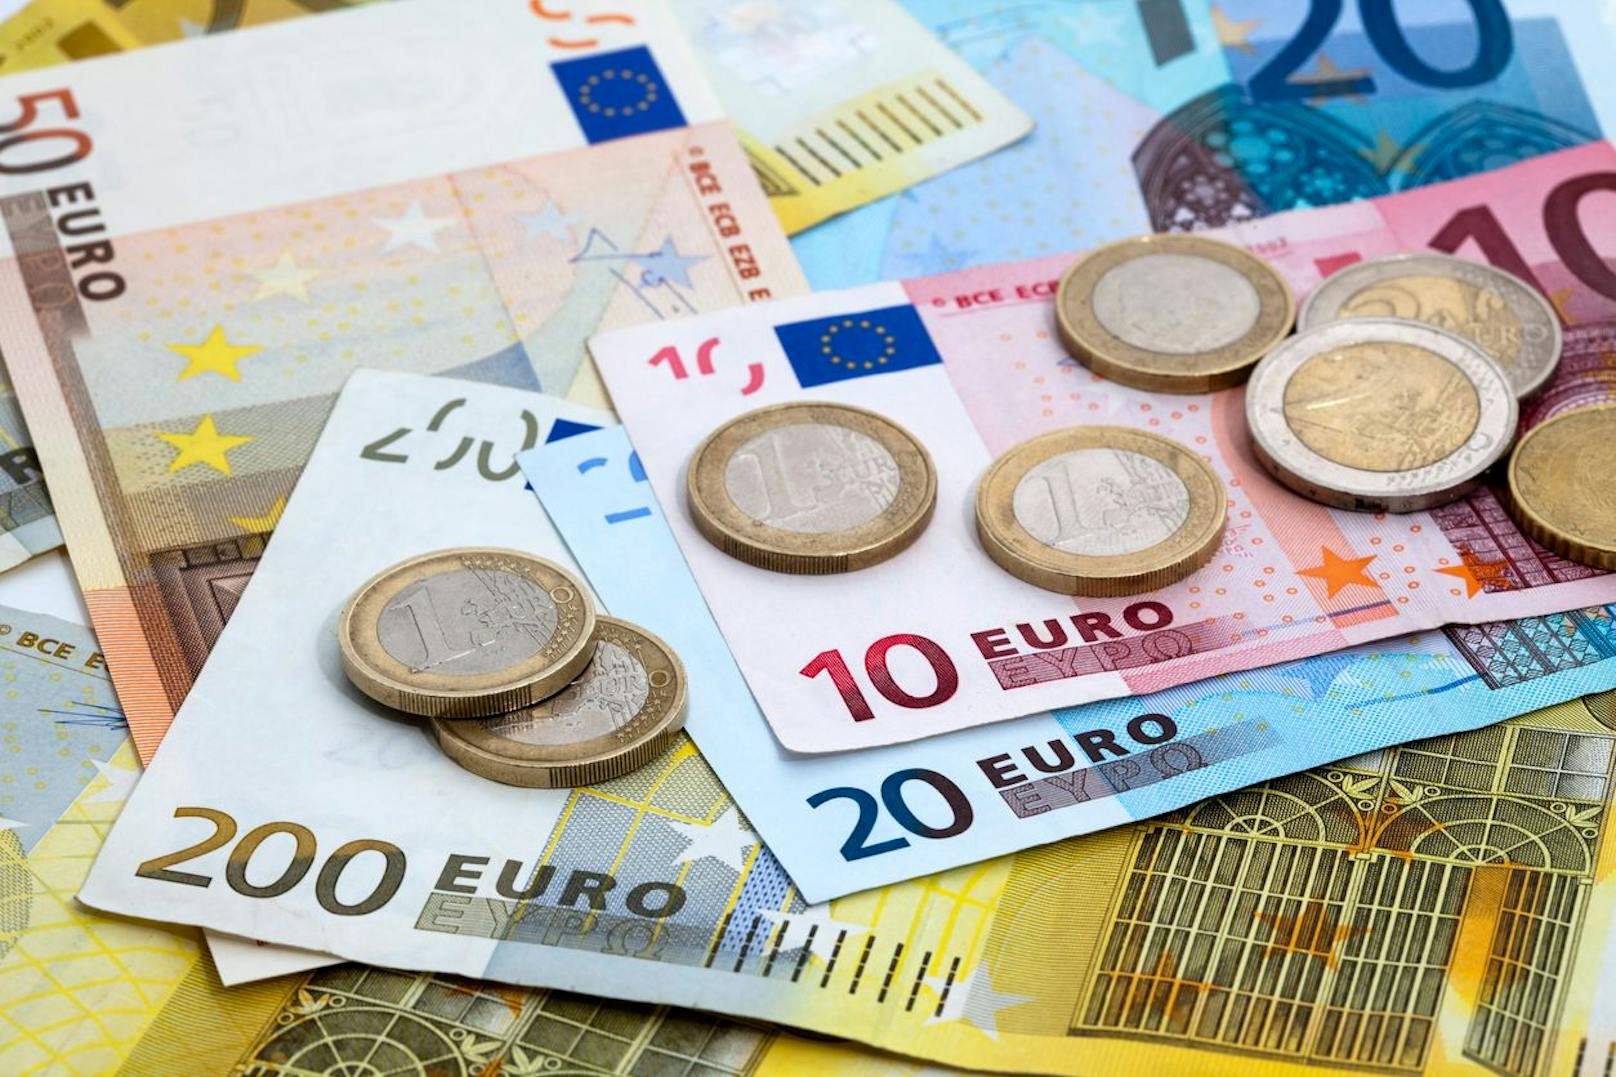 Fehler bei Endabrechnung kostete Mann 20.000 Euro